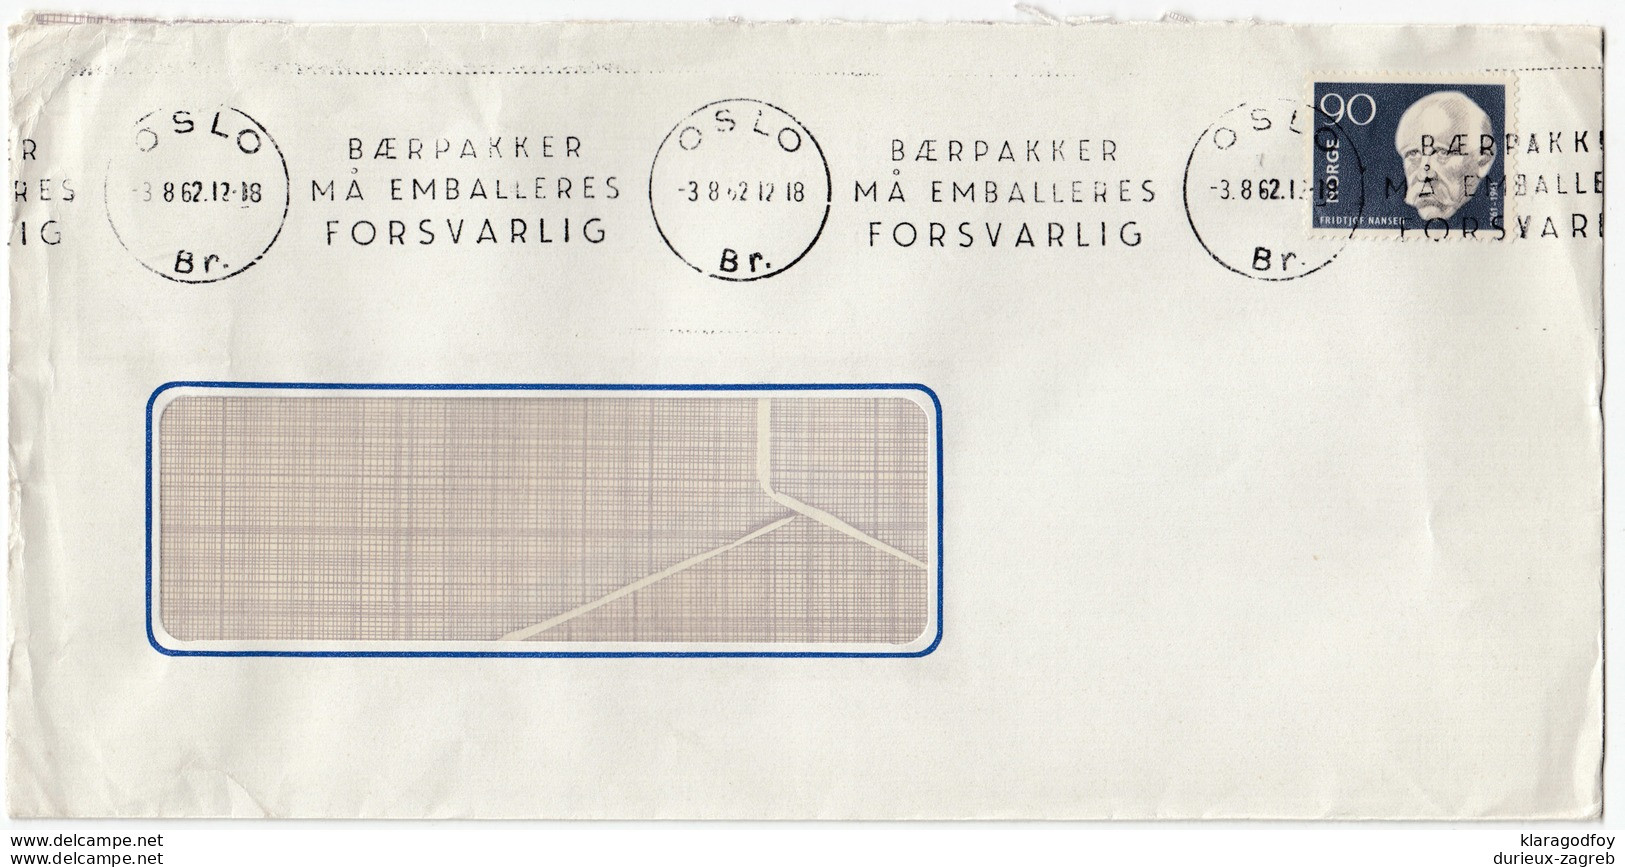 Baerpakker Ma Emalleres Forsvarlig Slogan Postmark On Letter Cover Travelled 1962  Bb161210 - Lettres & Documents